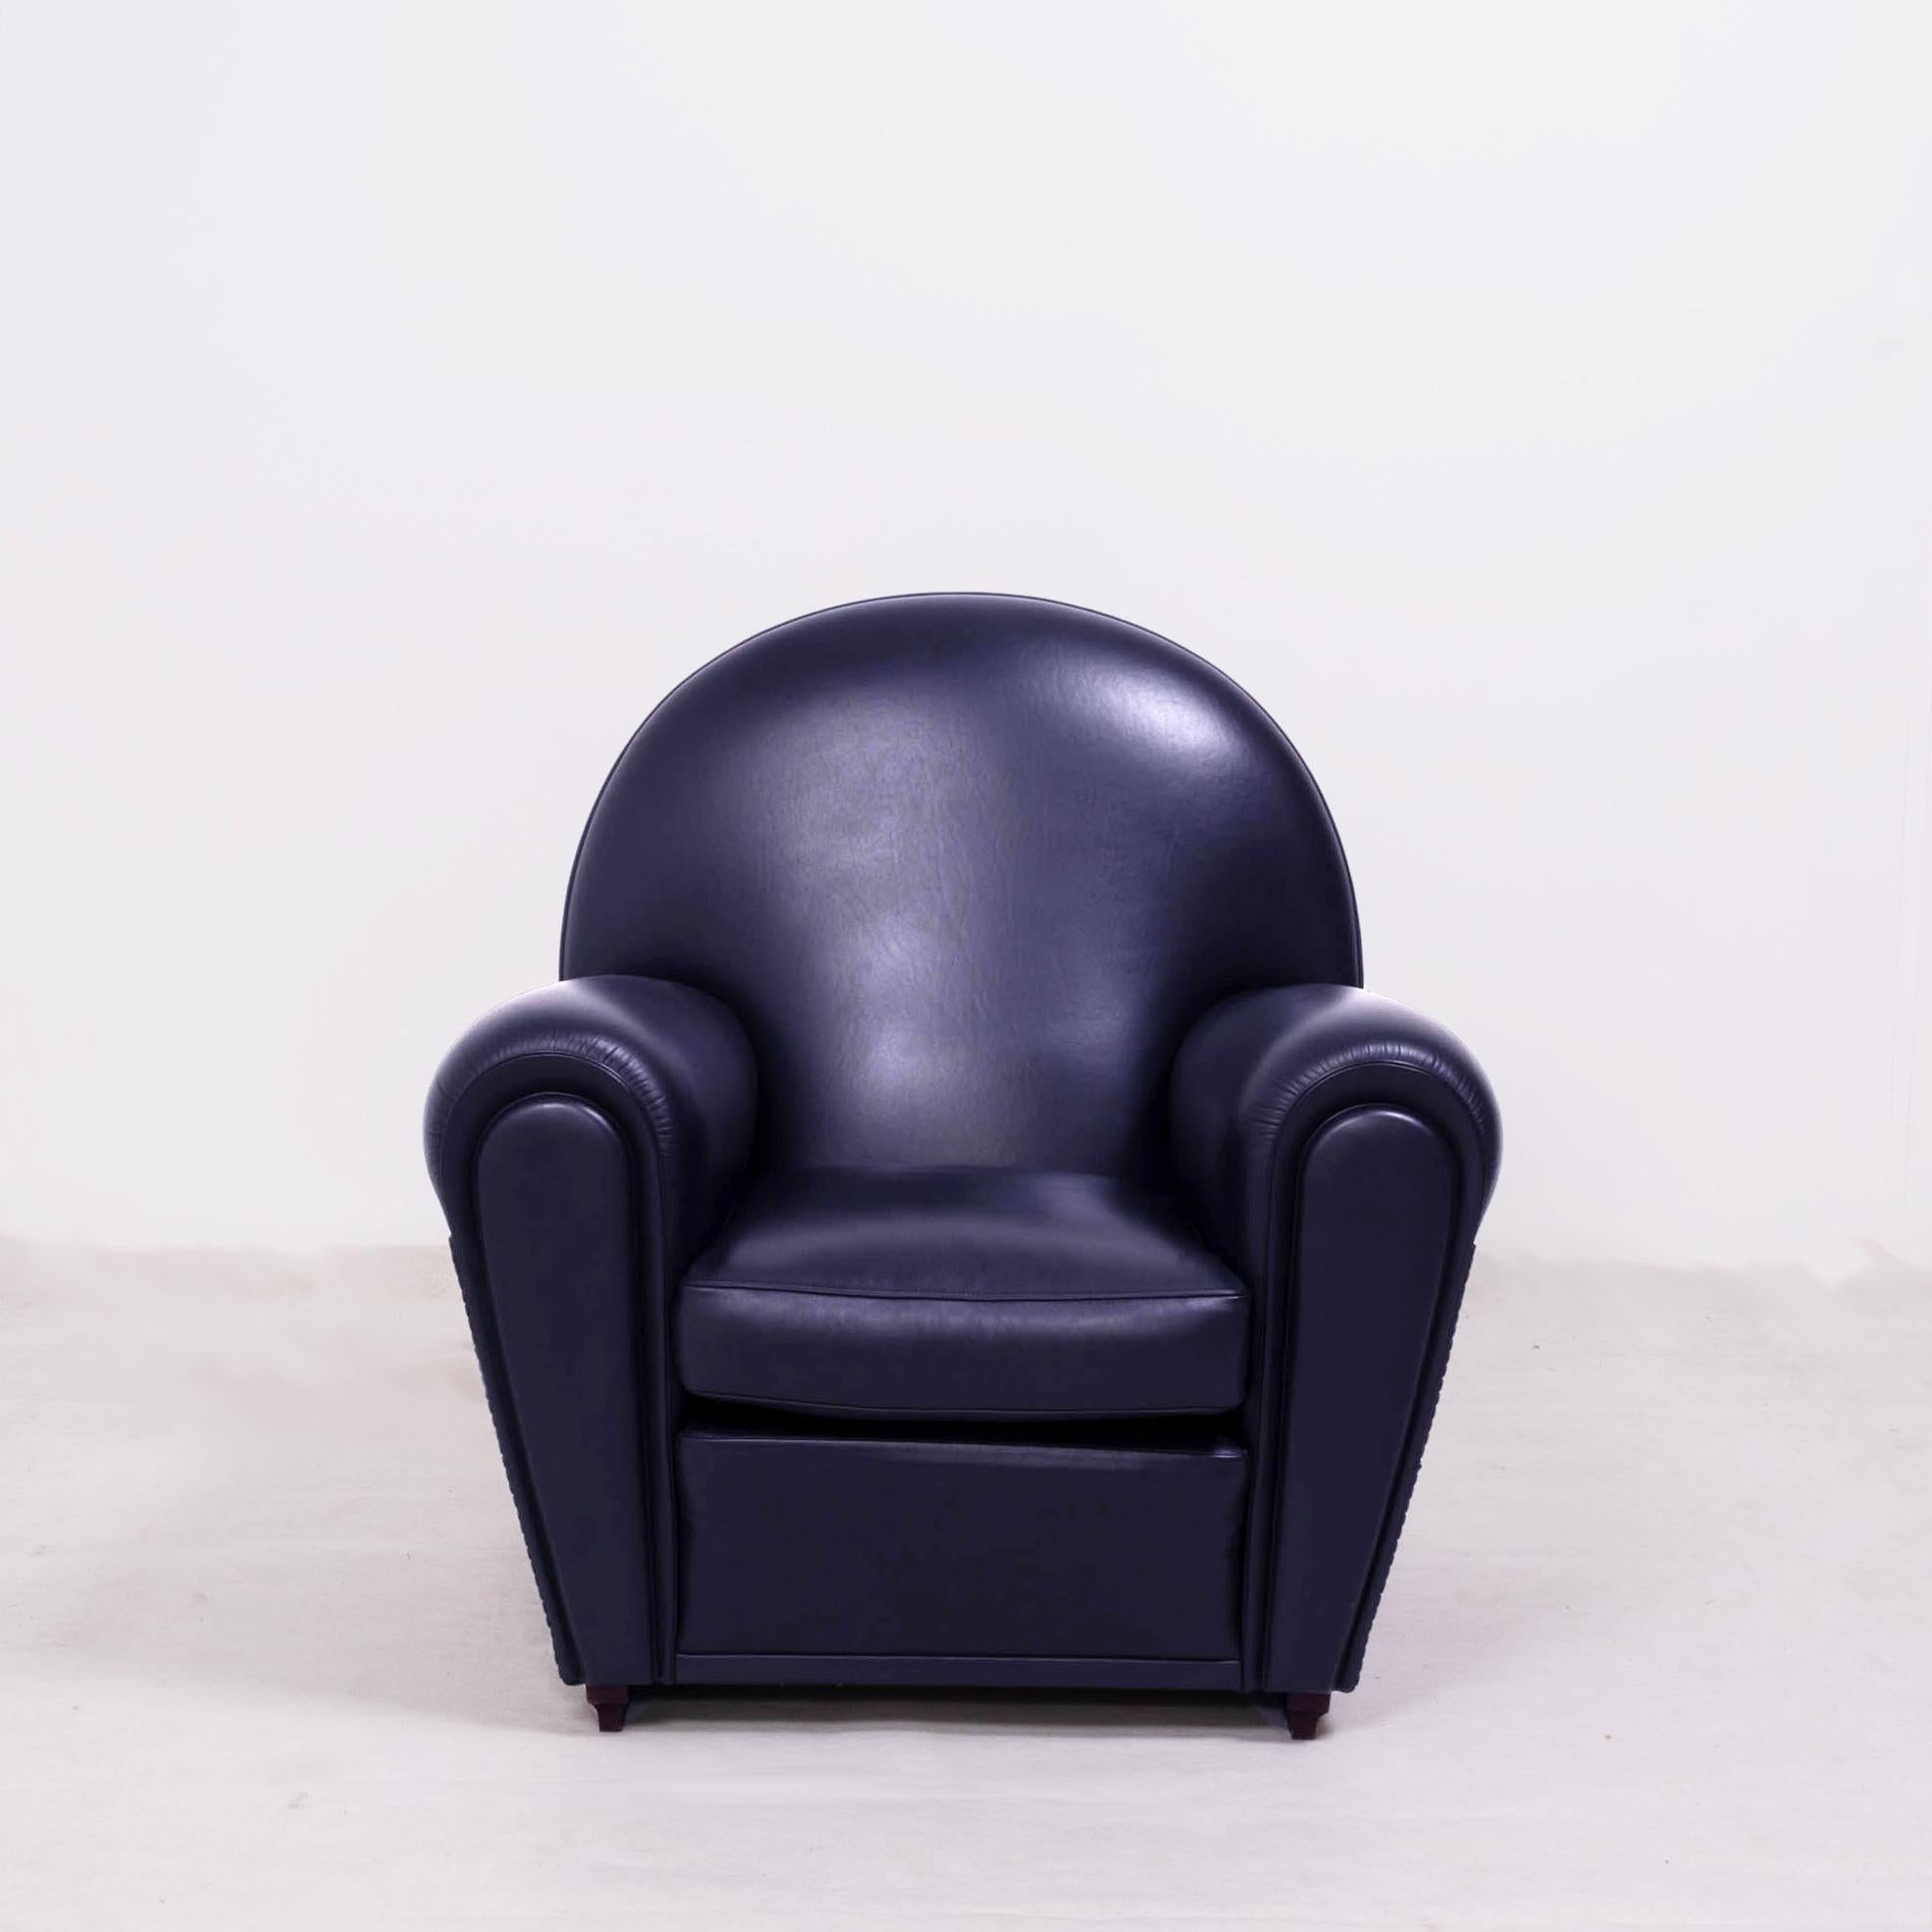 Poltrona Frau, Art Deco style Vanity Fair Black Leather Sofa and armchairs set 1